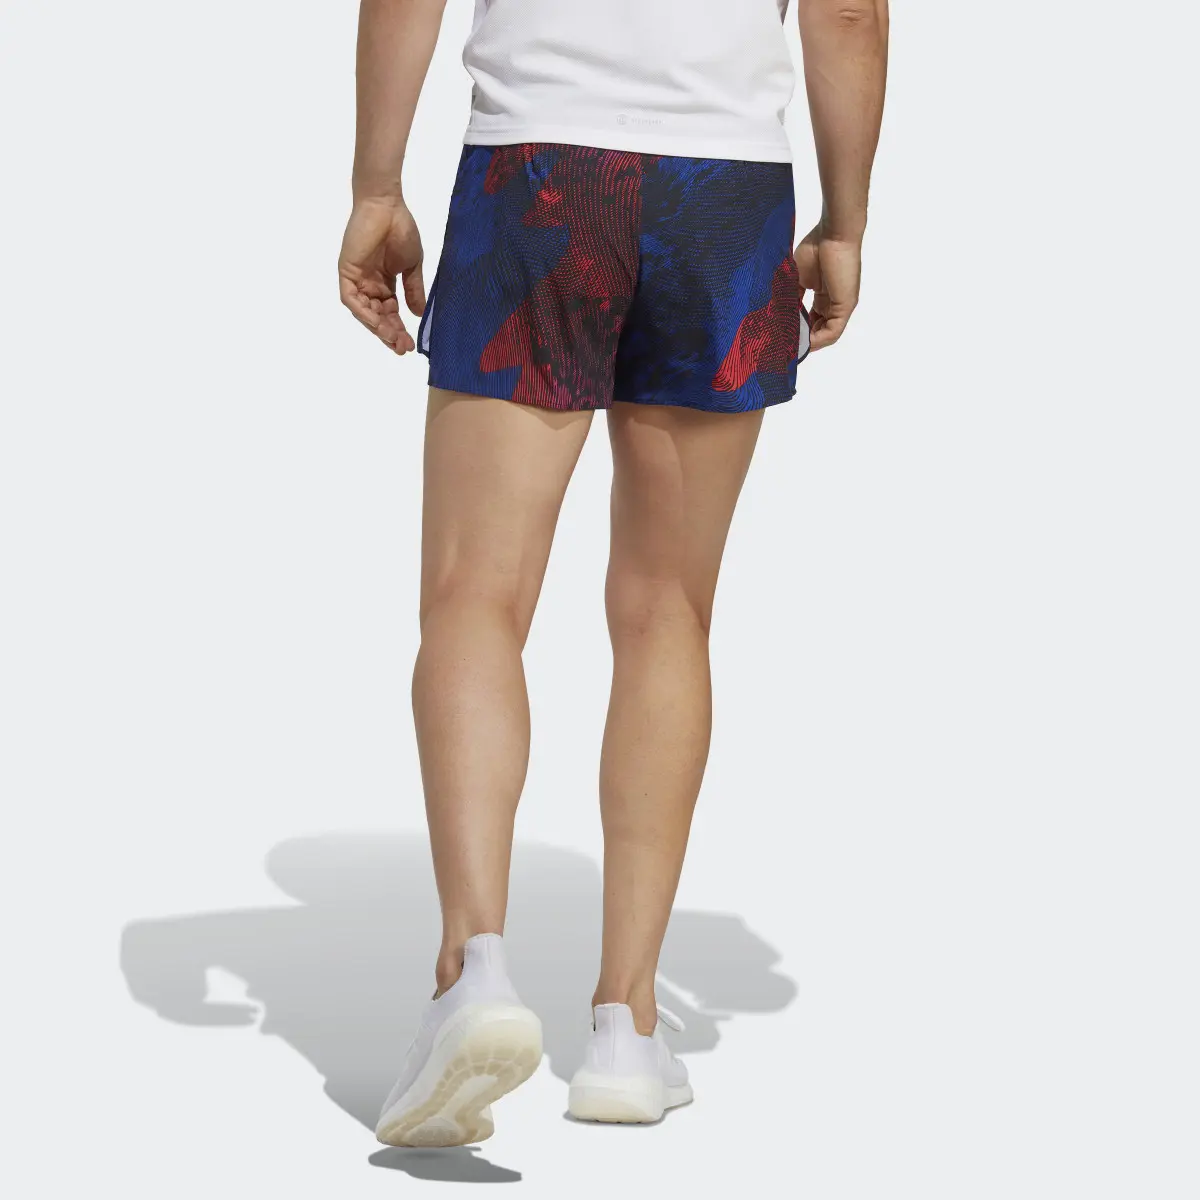 Adidas Adizero Split Shorts. 2